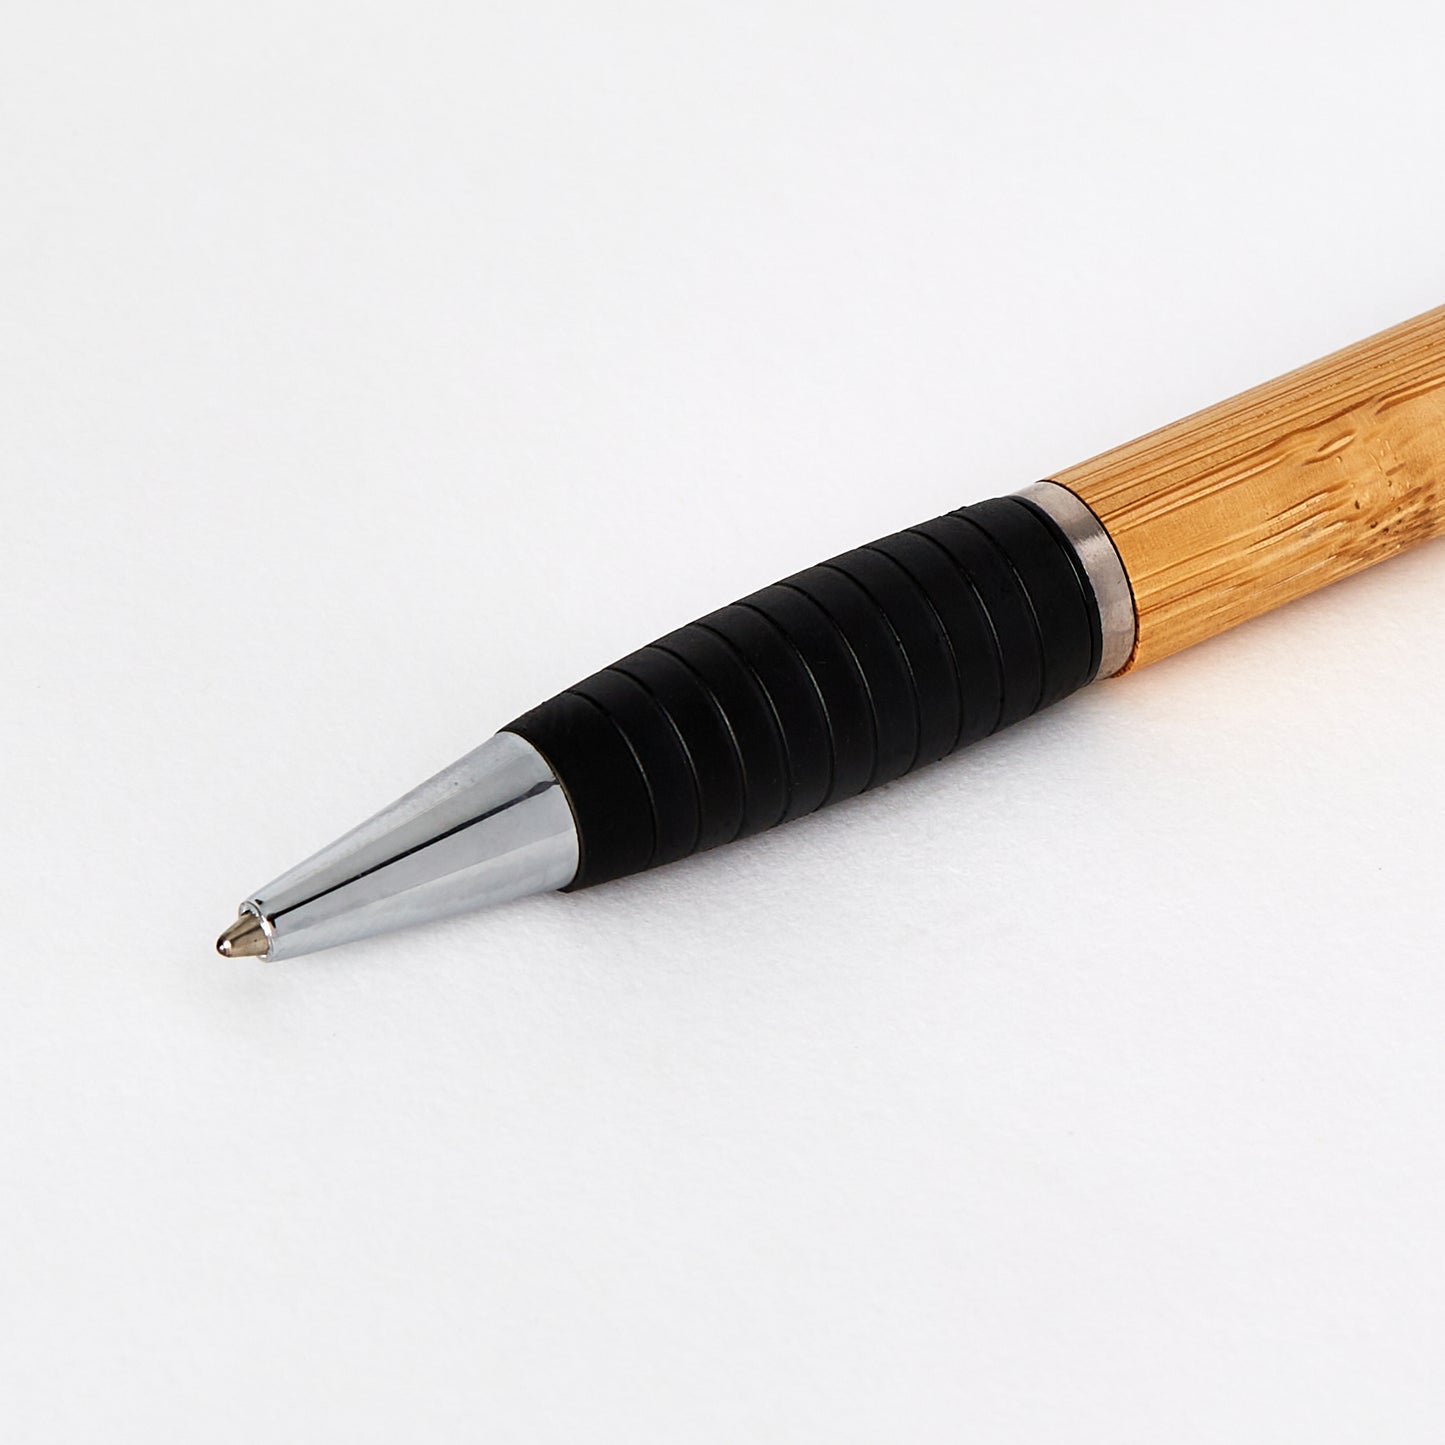 The Hundredth Acre "Branded" Bamboo Pen